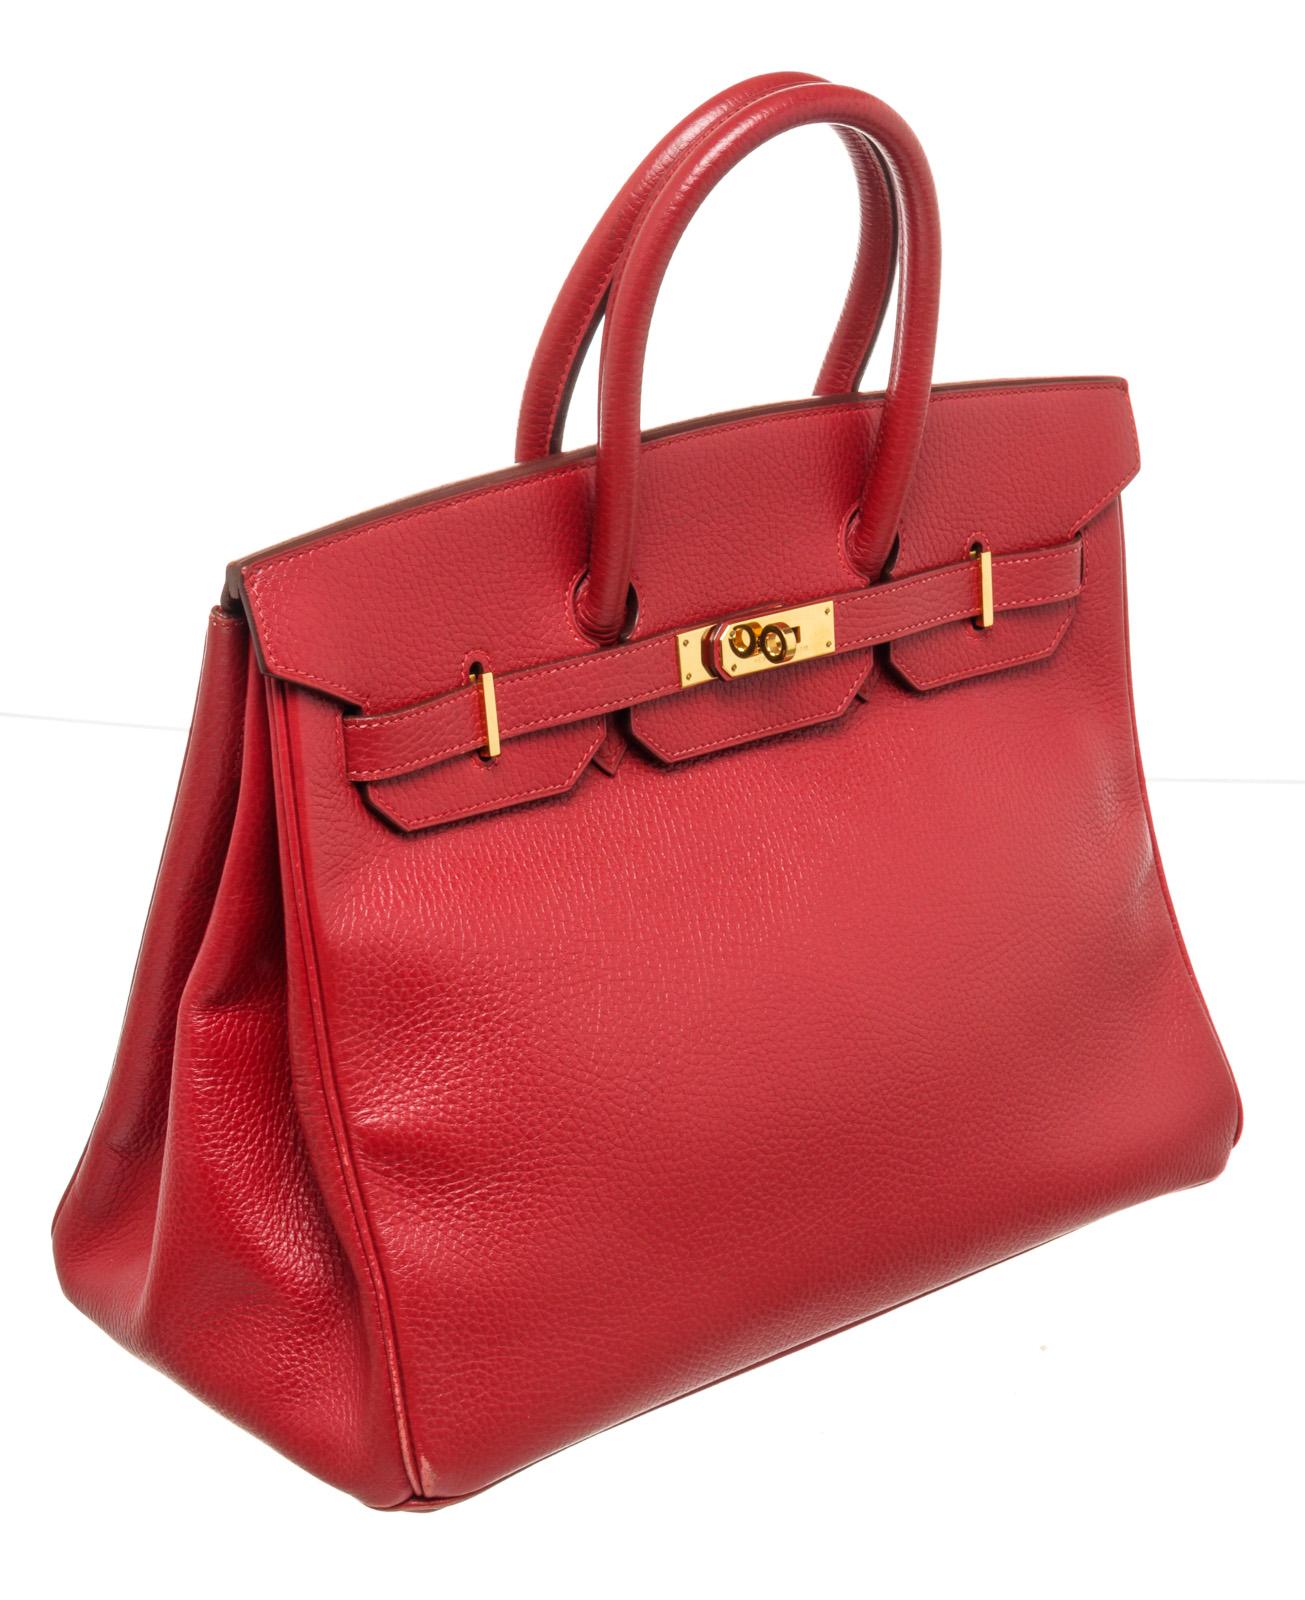 Women's Hermes Red Leather Birkin 35cm Satchel Bag